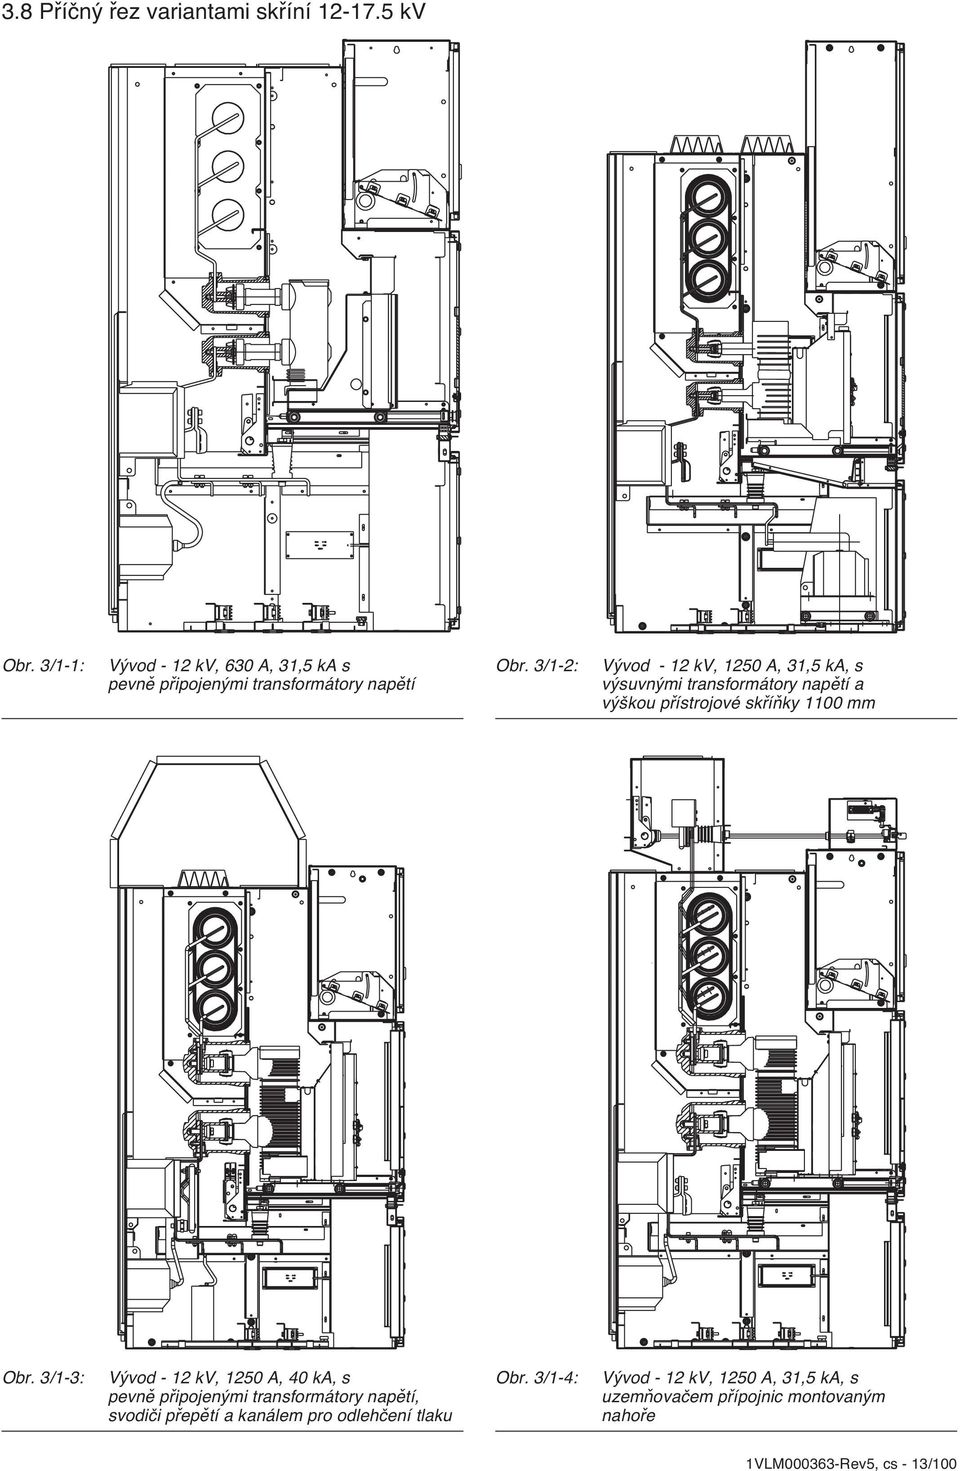 3/1-2: Vývod - 12 kv, 1250 A, 31,5 ka, s výsuvnými transformátory napětí a výškou přístrojové skříňky 1100 mm Obr.